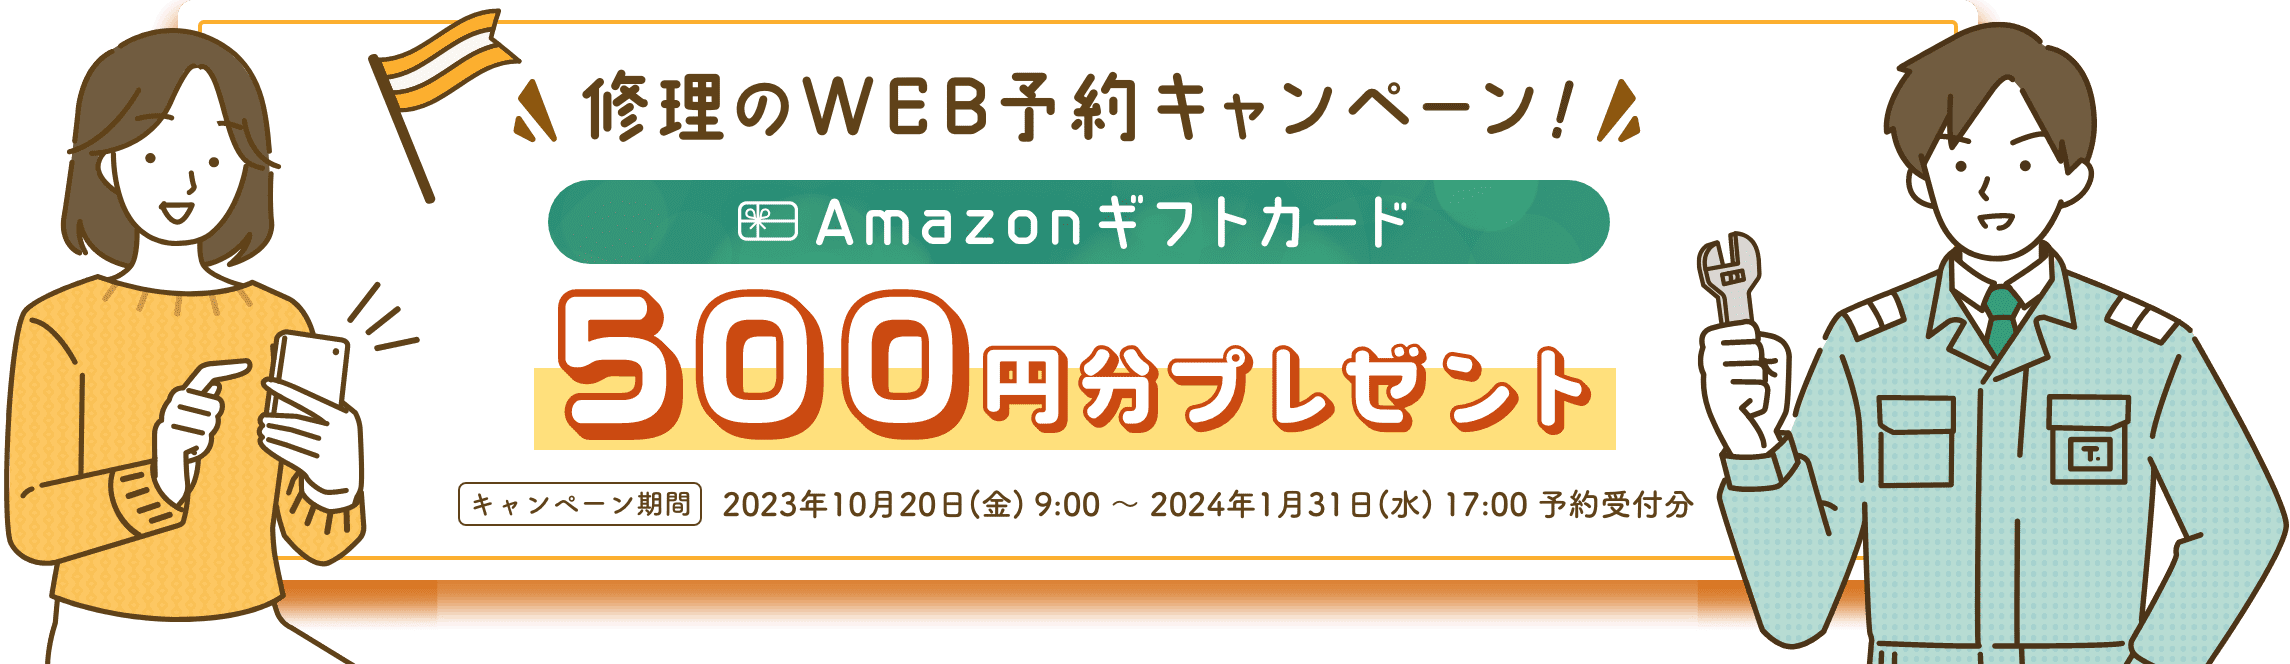 東京ガスの修理のWEB予約キャンペーン